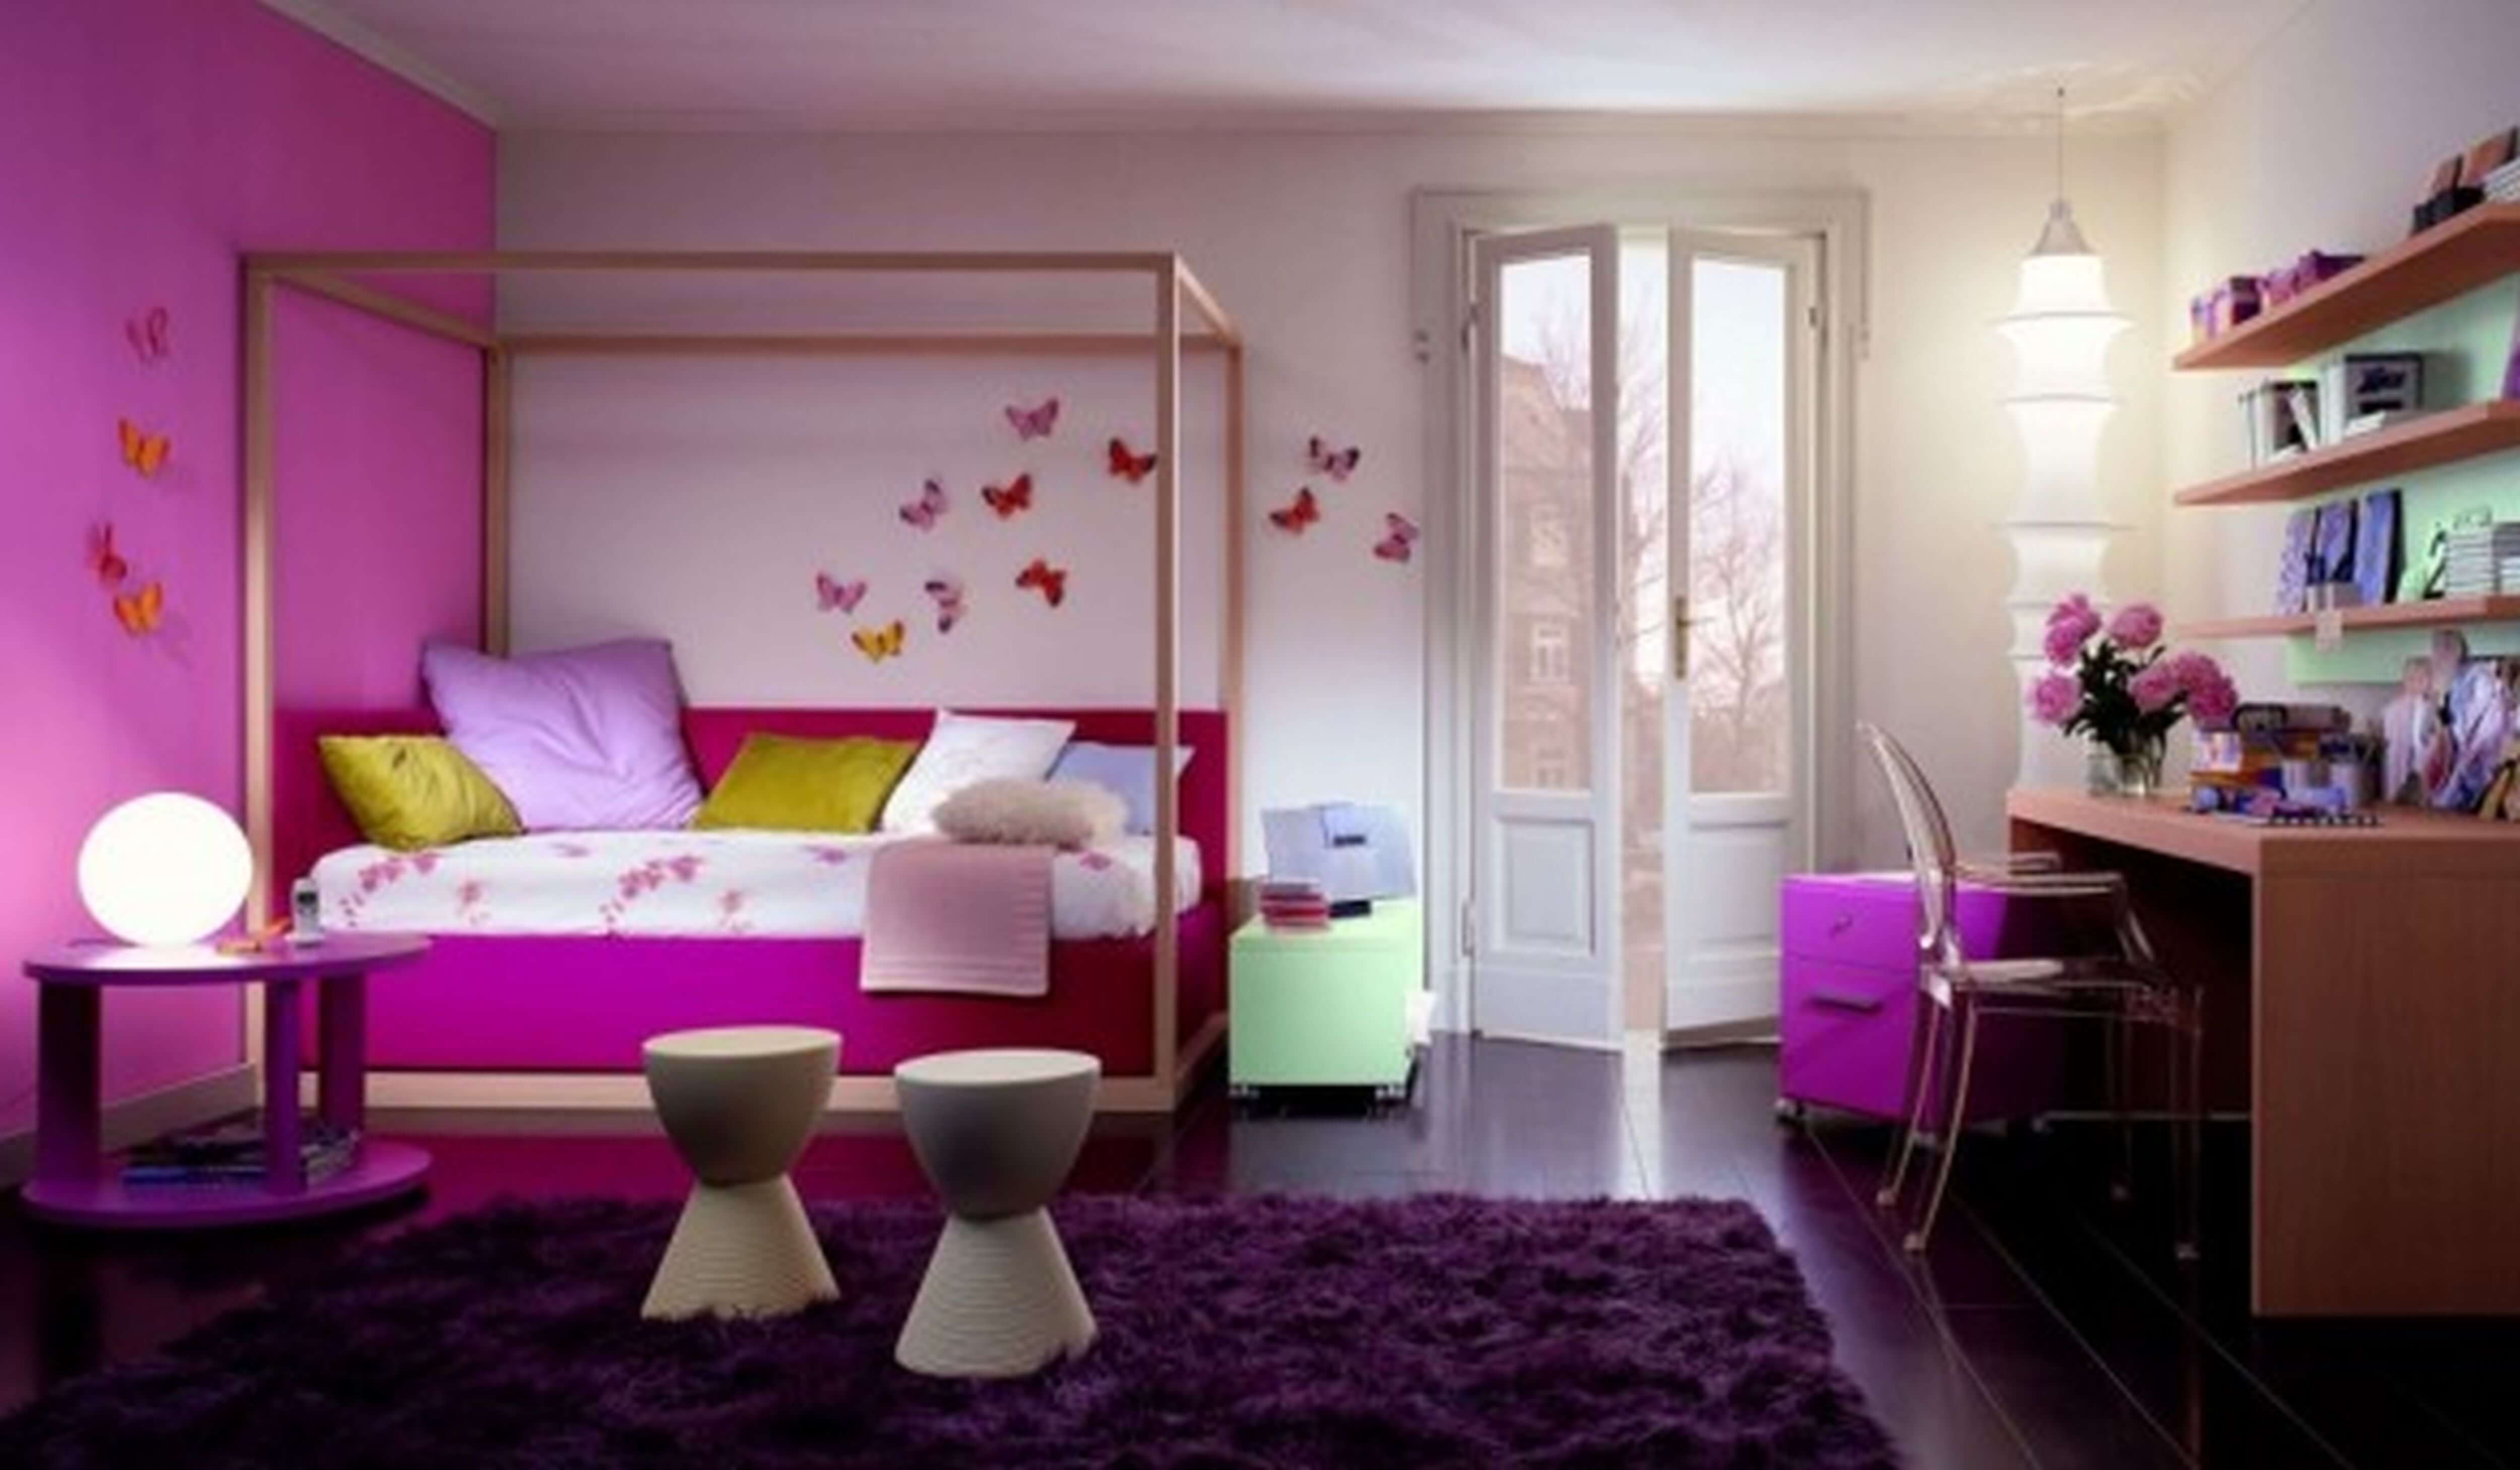 Bedroom, Farmhouse, Room, House, Girl Wallpaper